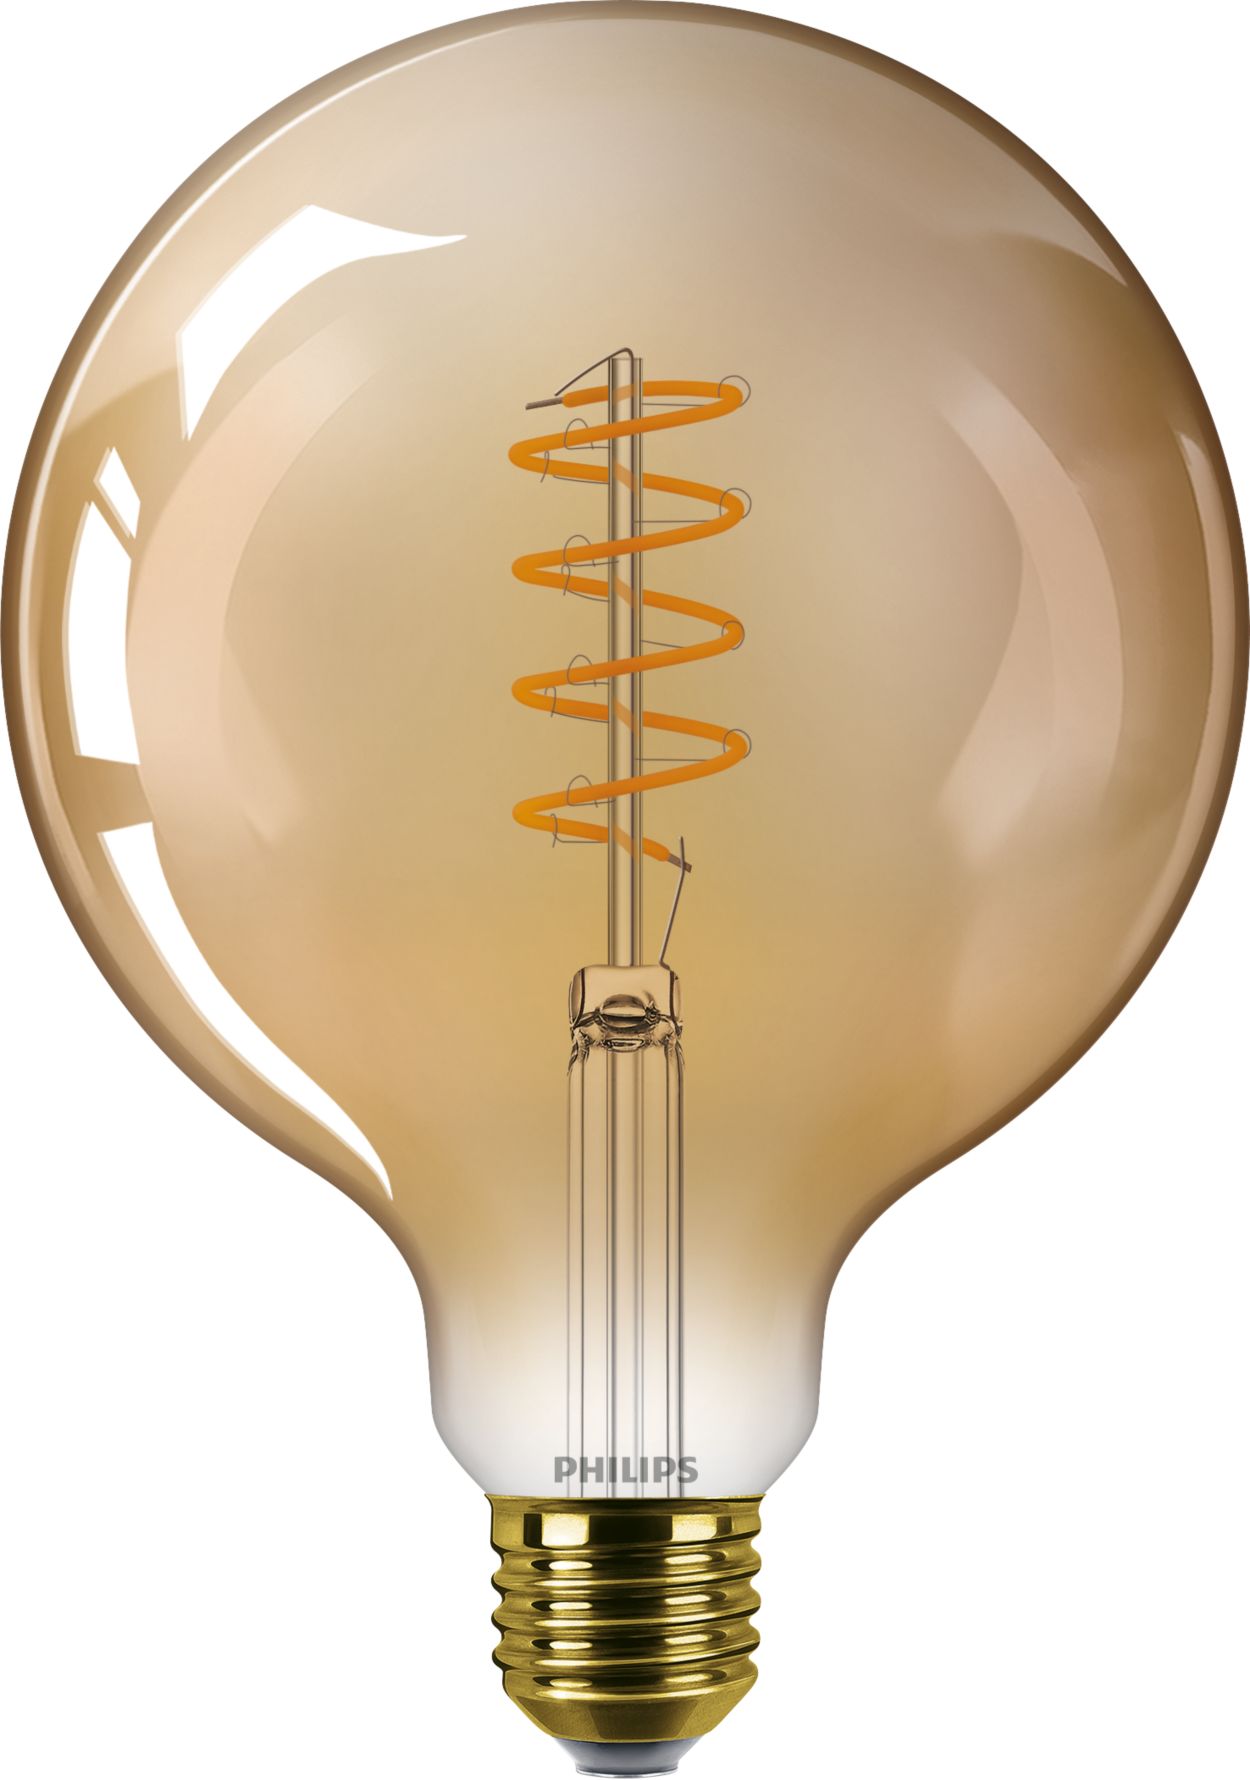 Namams skirta šiuolaikinė šviesos diodų lemputė